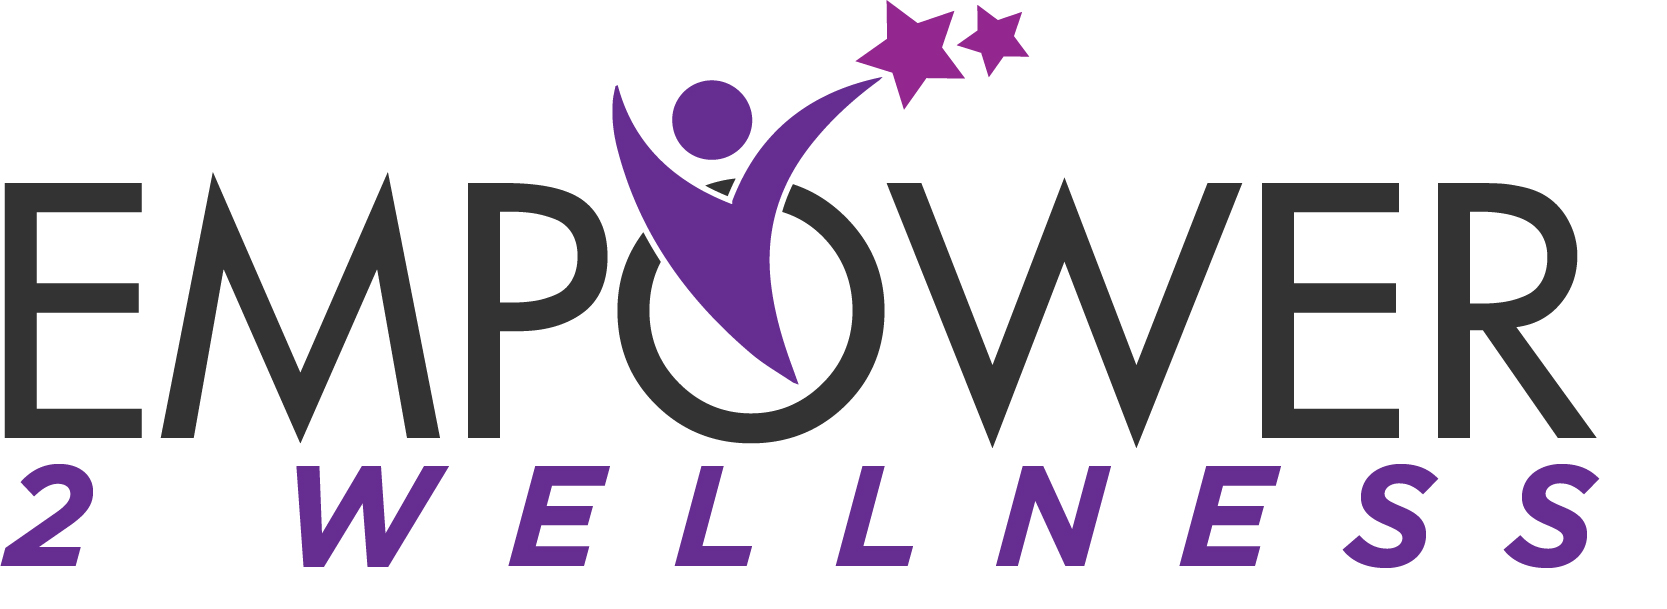 Empower_2_Wellness_sf - 